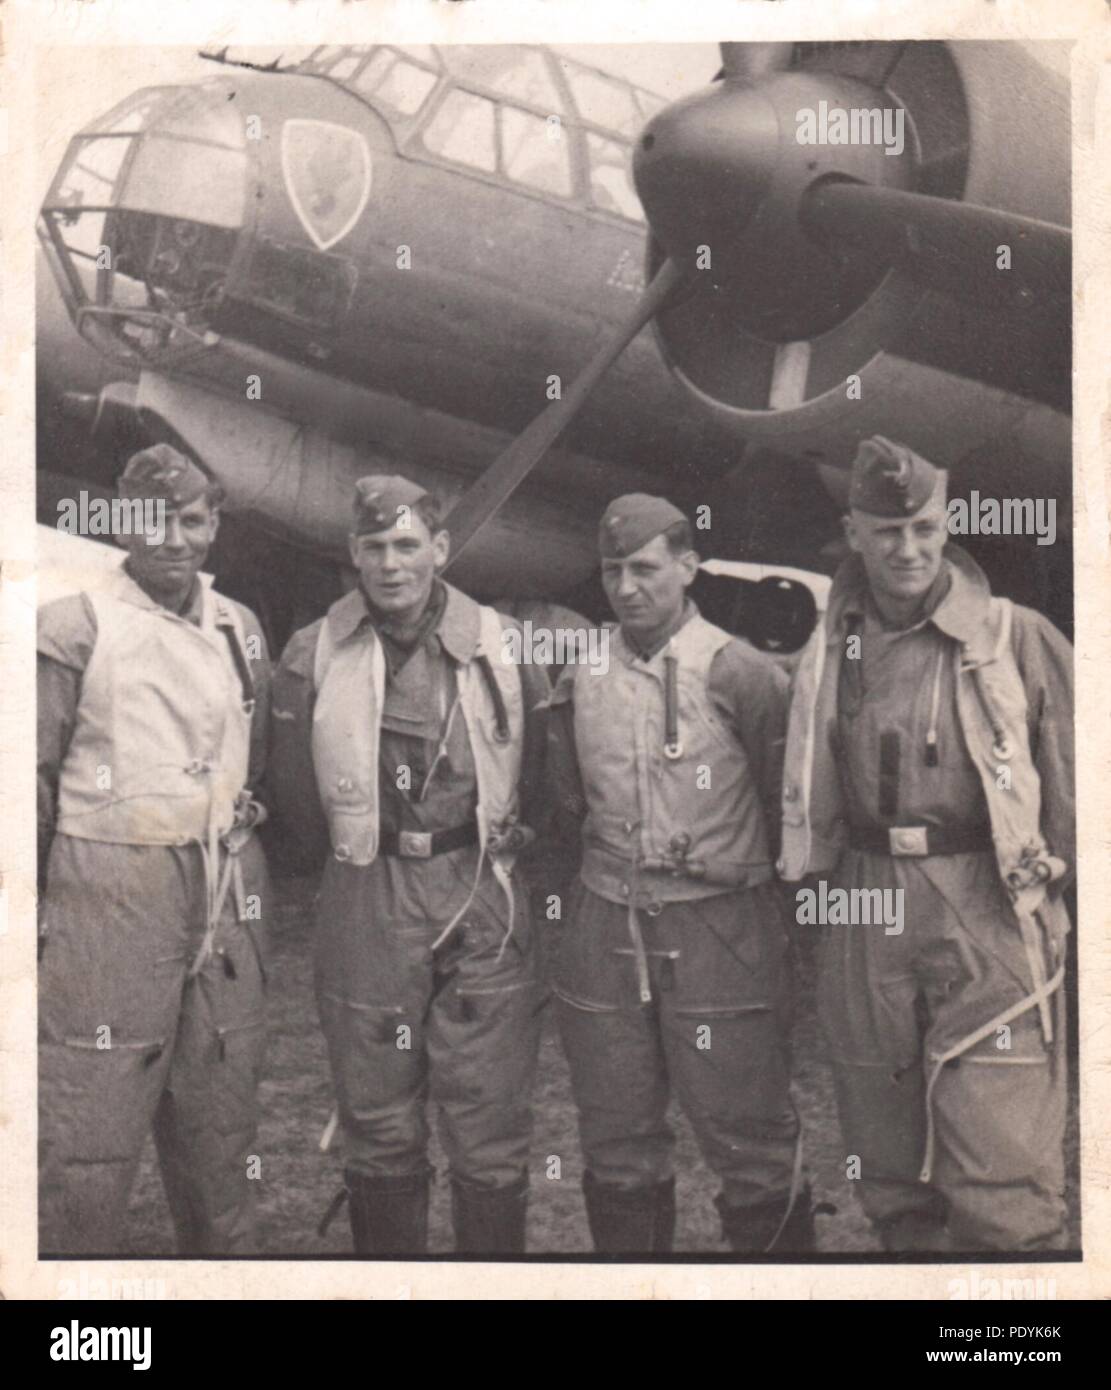 Droit de l'album photo de Feldwebel Willi Hoffmann, de 5. La Kampfgeschwader 30, Staffel : Willi Erkens et son équipage de 5./KG 30 poser à côté de leur Junkers Ju 88A-1 bomber en avril 1940. De gauche à droite : Gefreiter Wilhelm Hoffmann (Mitrailleur), Unteroffizier Wilhelm Erkens (Pilote), l'Unteroffizier Richard Müller (observateur), Otto Unteroffizier (Beinmüller d'opérateur). L'équipage n'a pas réussi à revenir d'une mission en Méditerranée le 23 janvier 1943. Banque D'Images